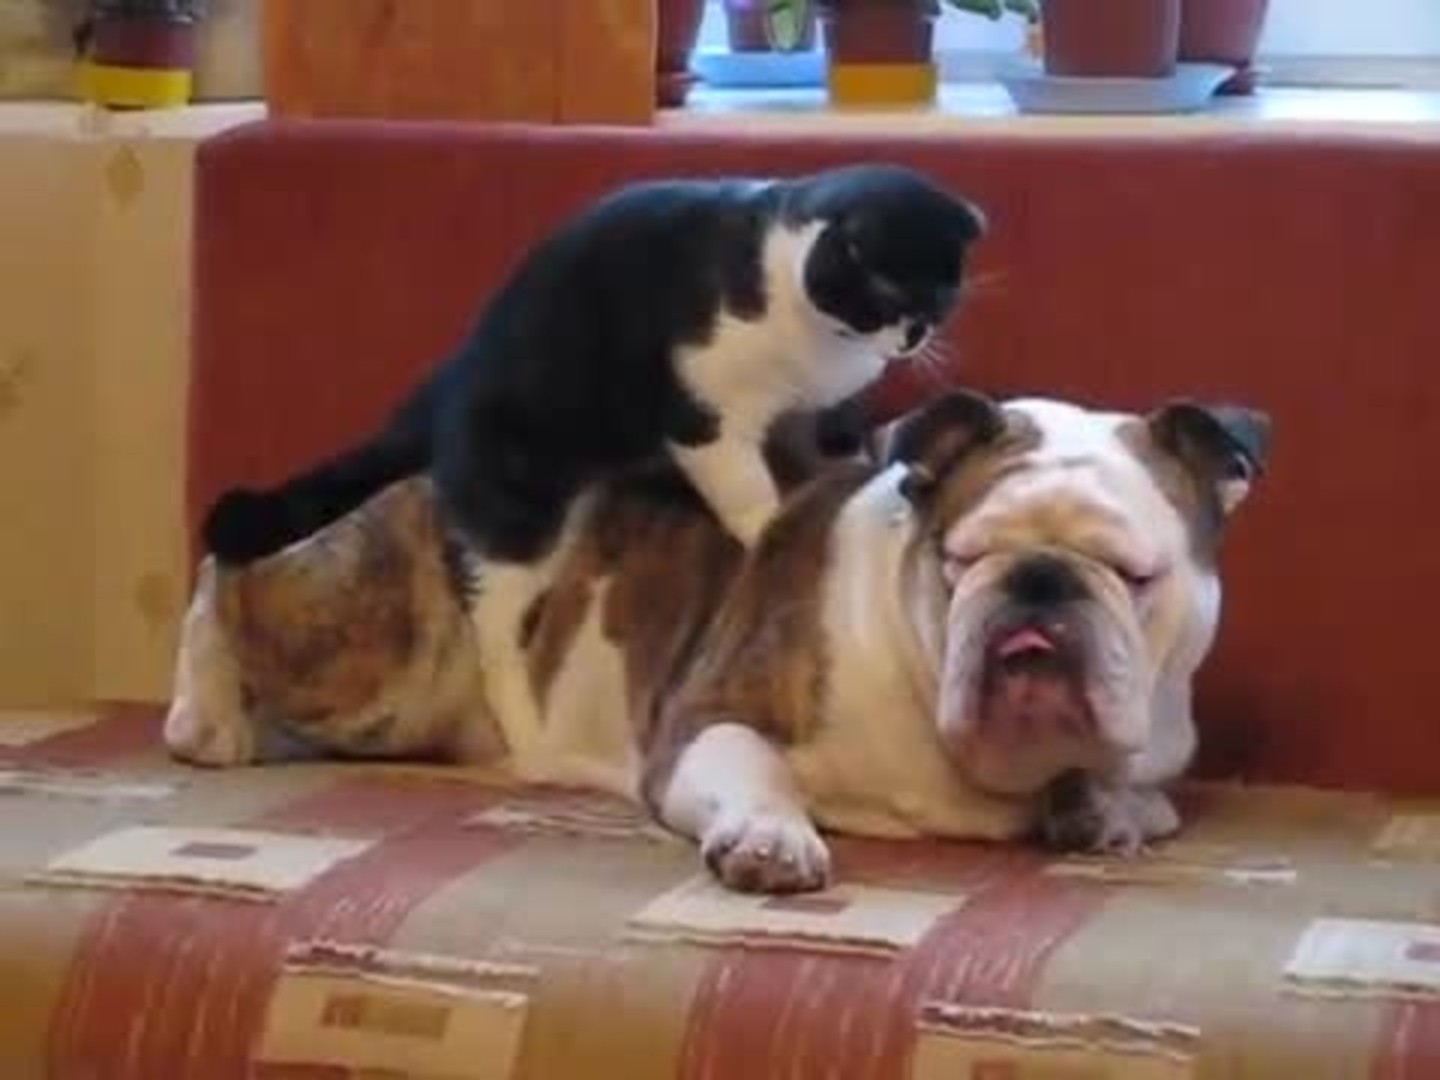 Cat gives massage to bulldog - Chicago Tribune